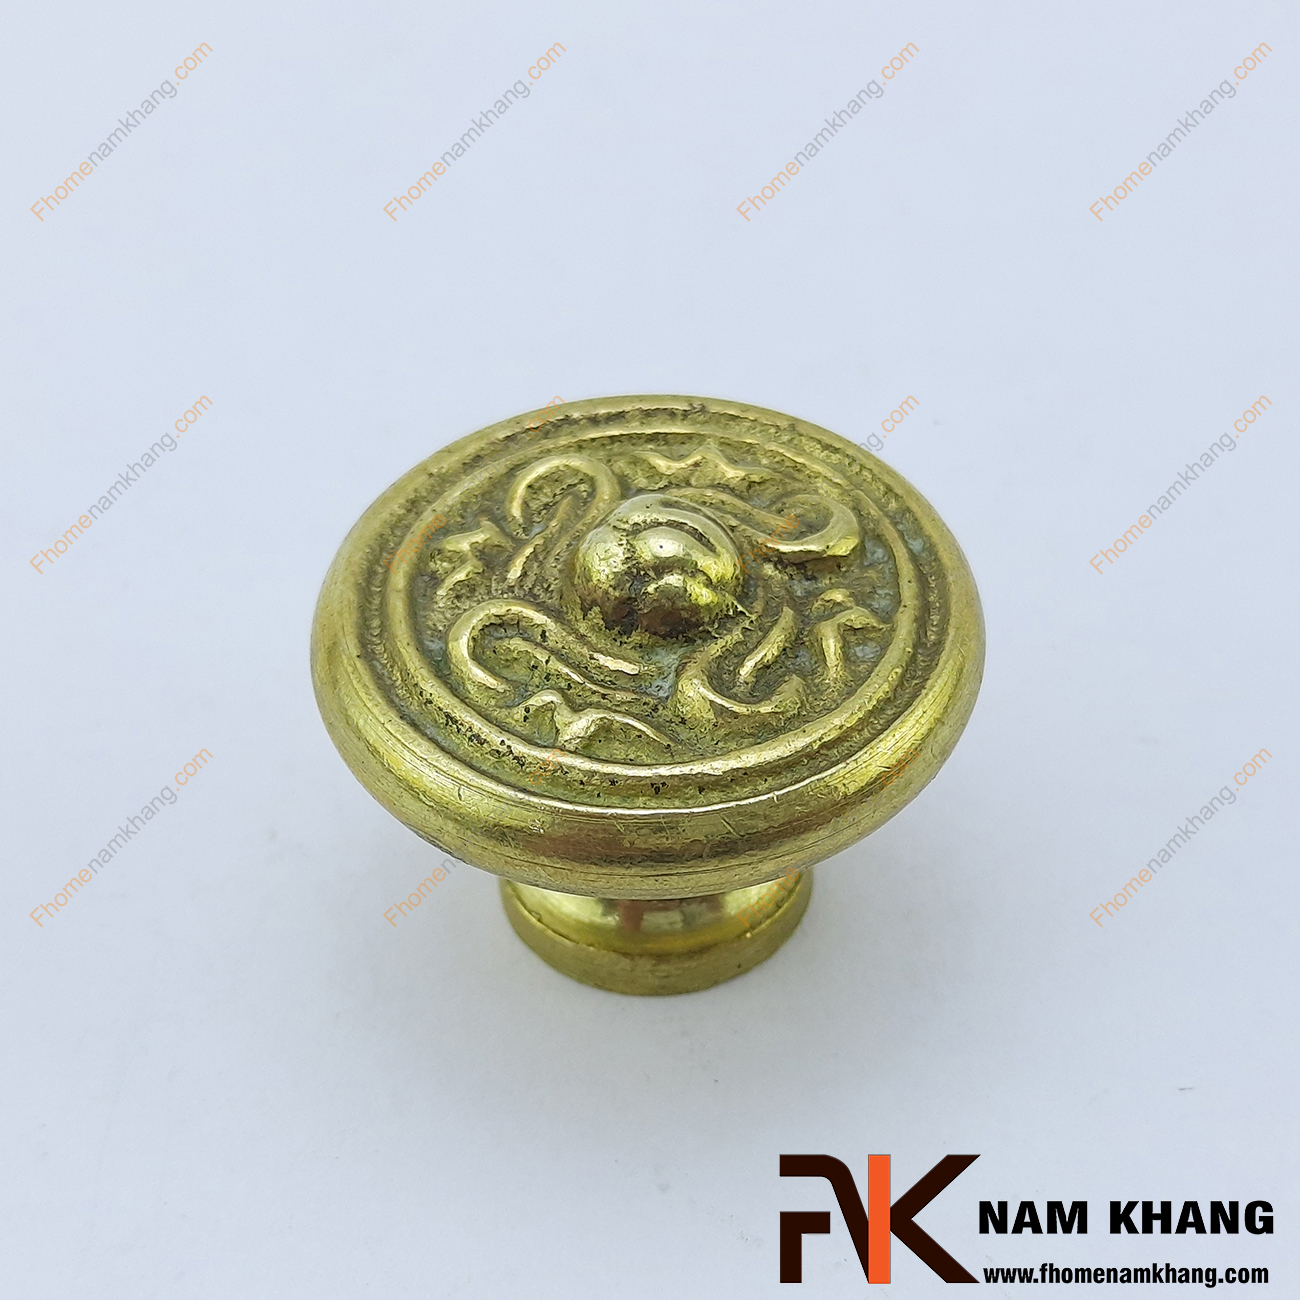 Núm nắm tủ hoa đồng cổ NKD079 có khuôn dạng nấm tròn được thiết kế các họa tiết cổ đối xứng xoay tròn với nhau.